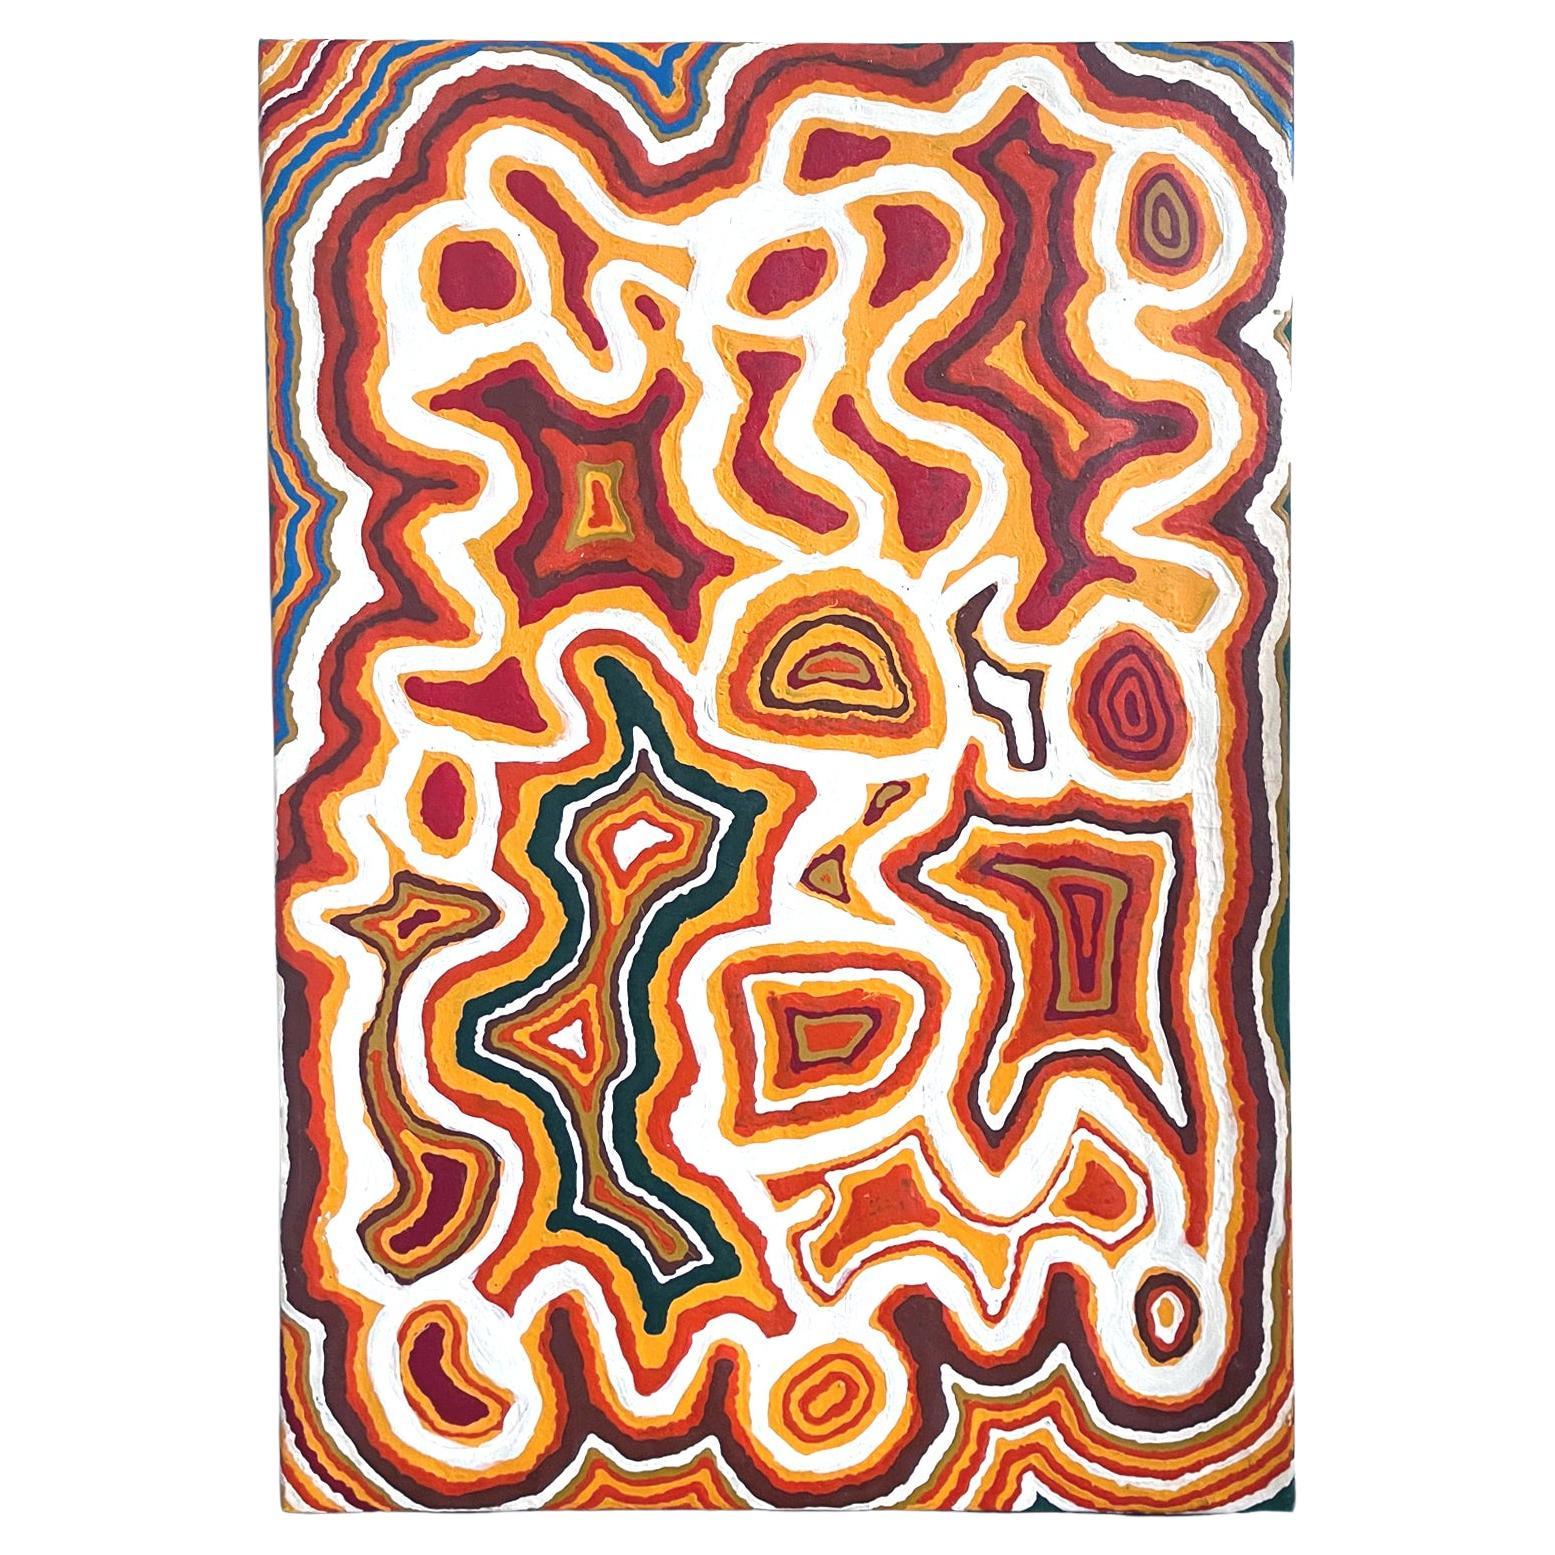 Pintura aborigen australiana "Piari" de Ningie Nangala